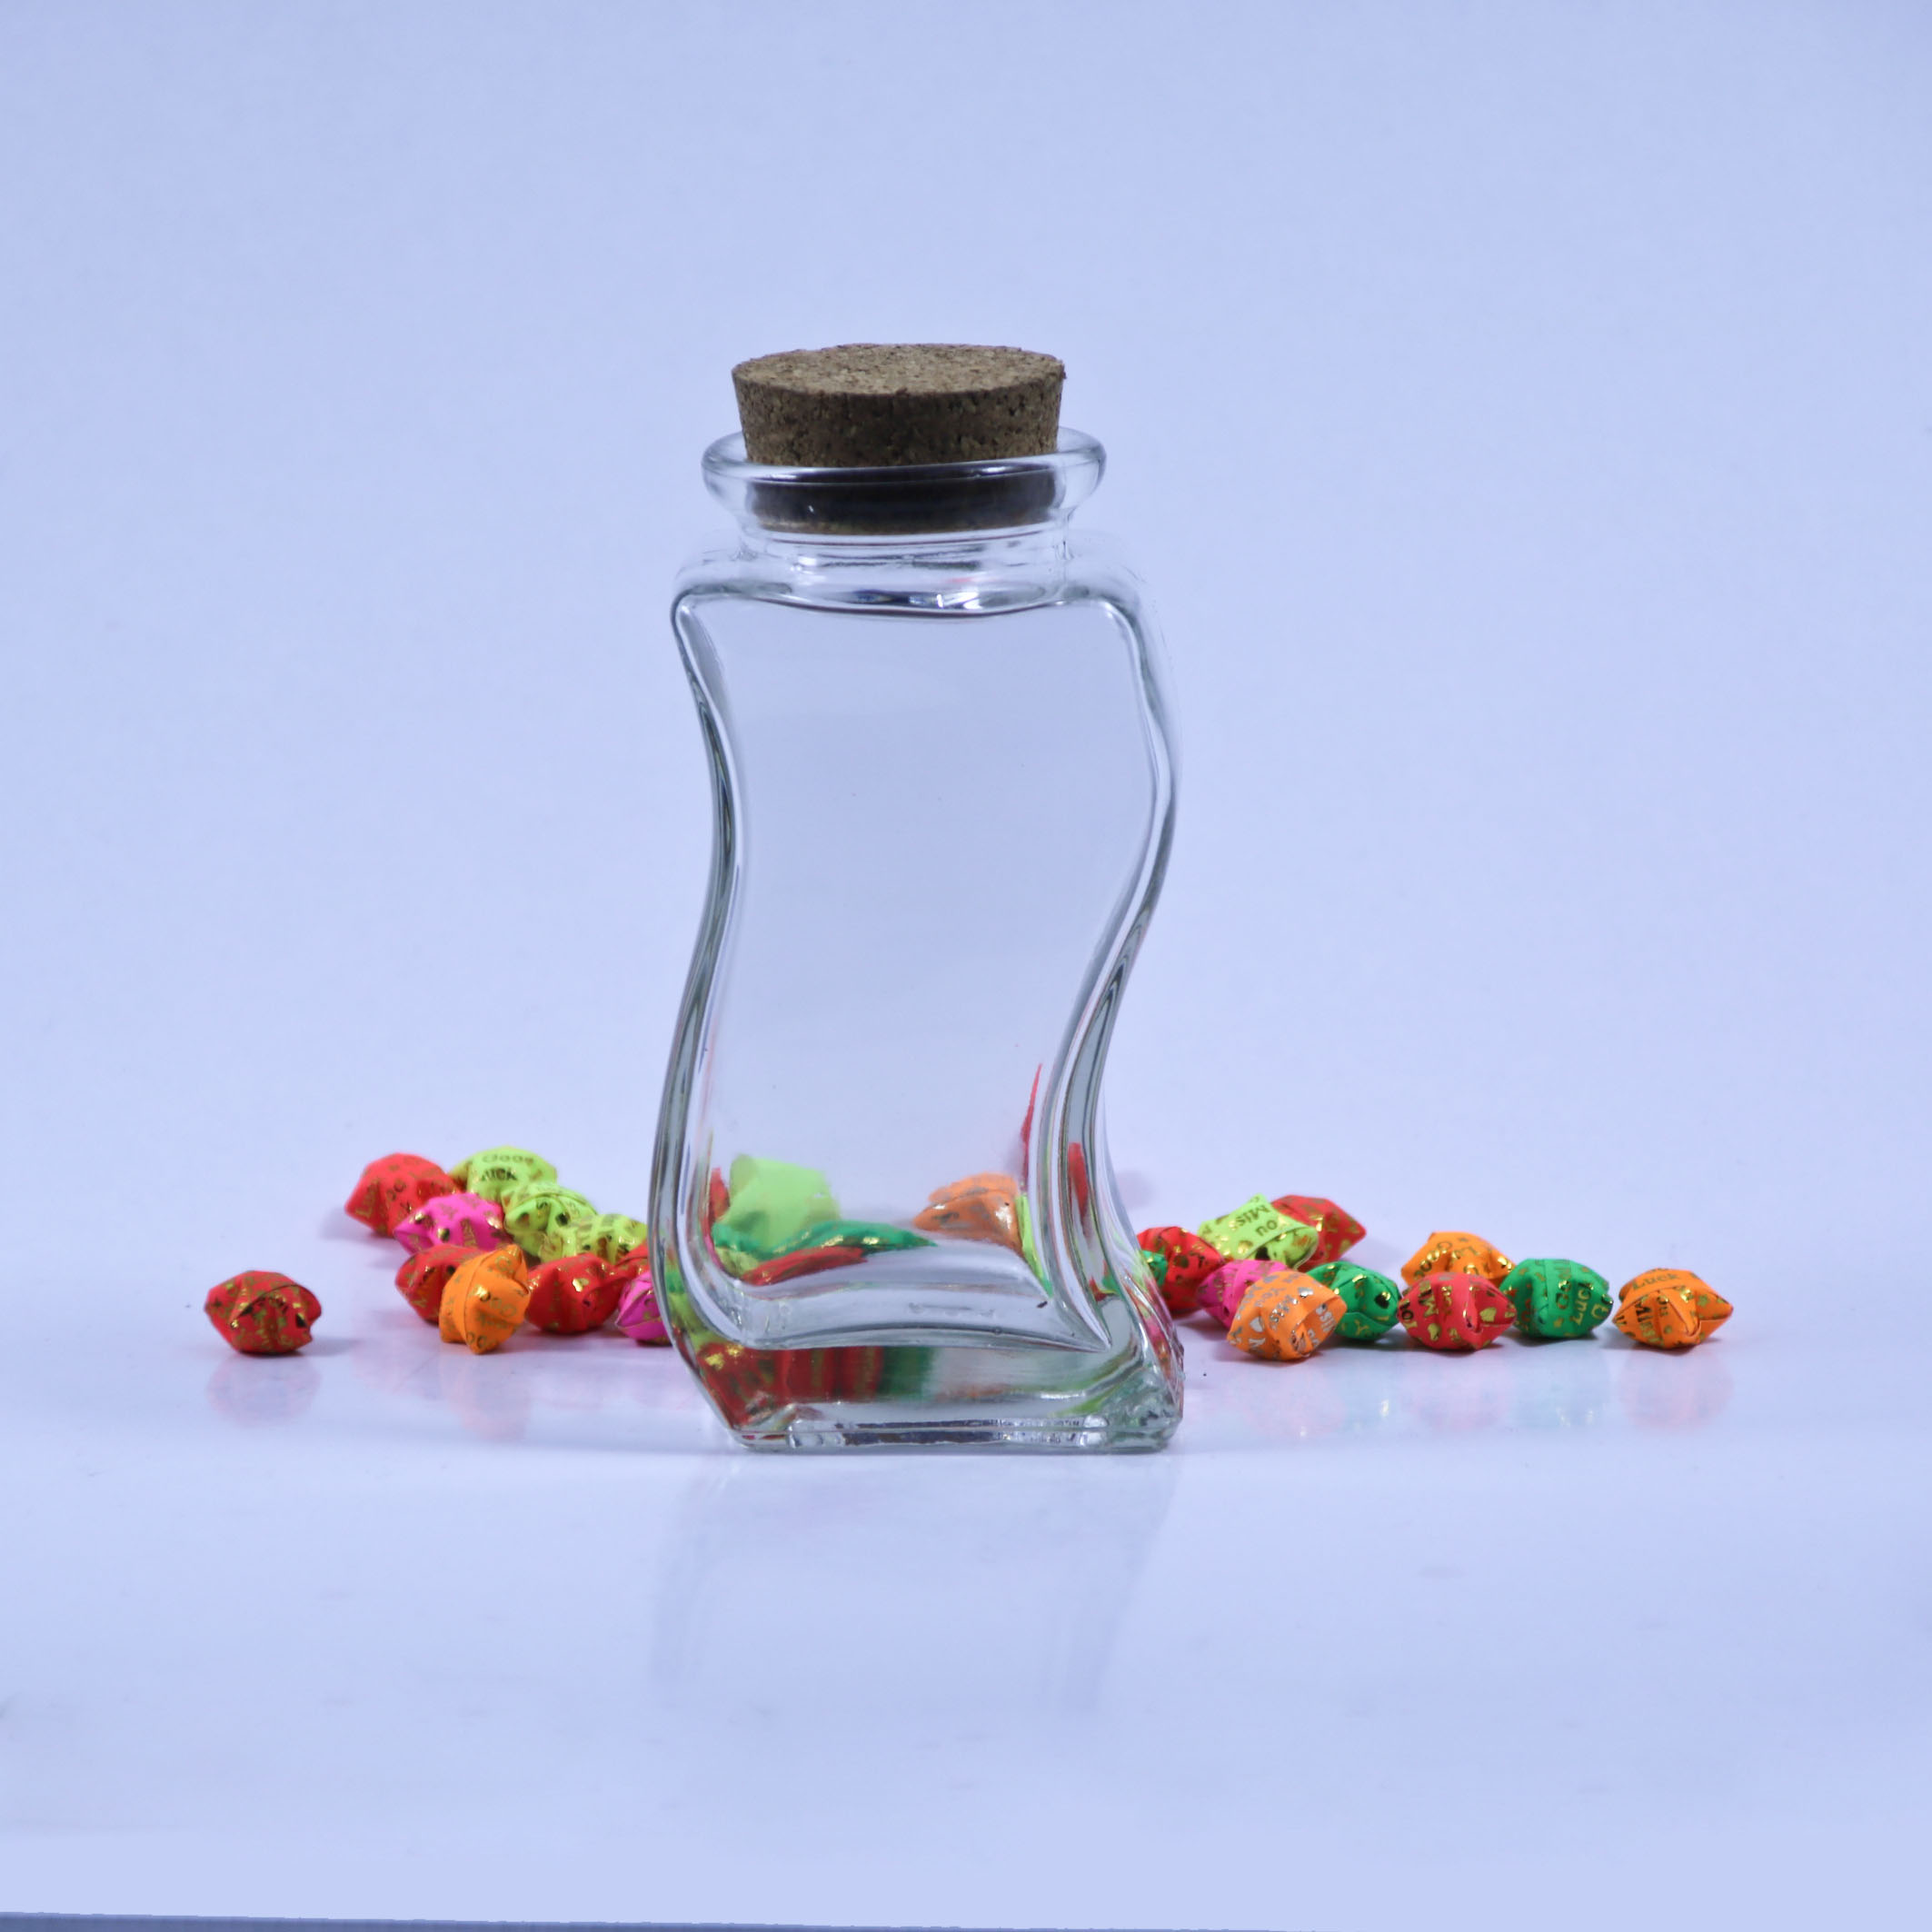 广州市S型摆设玻璃瓶厂家供应S型摆设玻璃瓶 工艺玻璃瓶 艺术摆设瓶 生日礼物装饰瓶